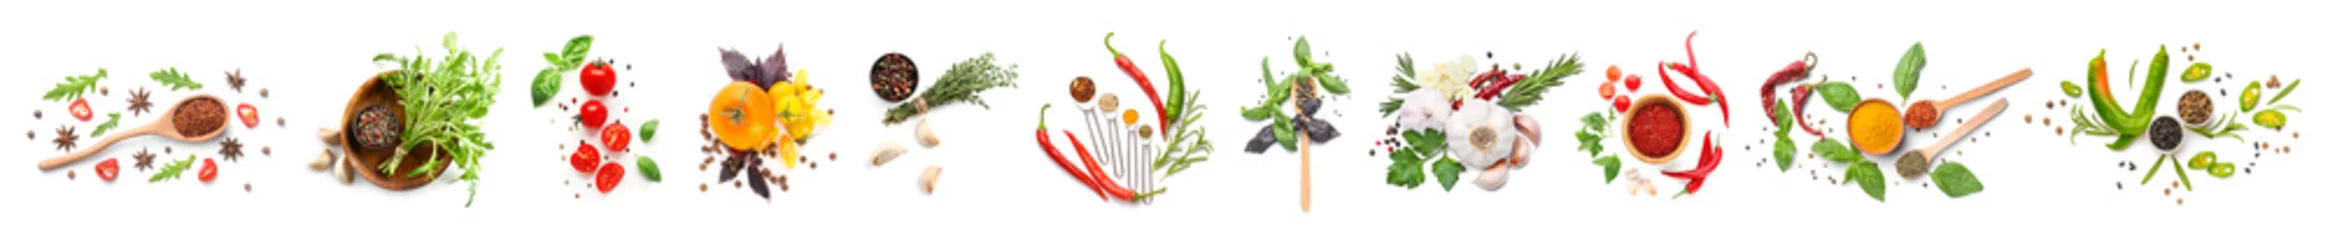 Abwaschbare Fototapete Frisches Gemüse Verschiedene frische Gewürze, Kräuter und Gemüse auf weißem Hintergrund